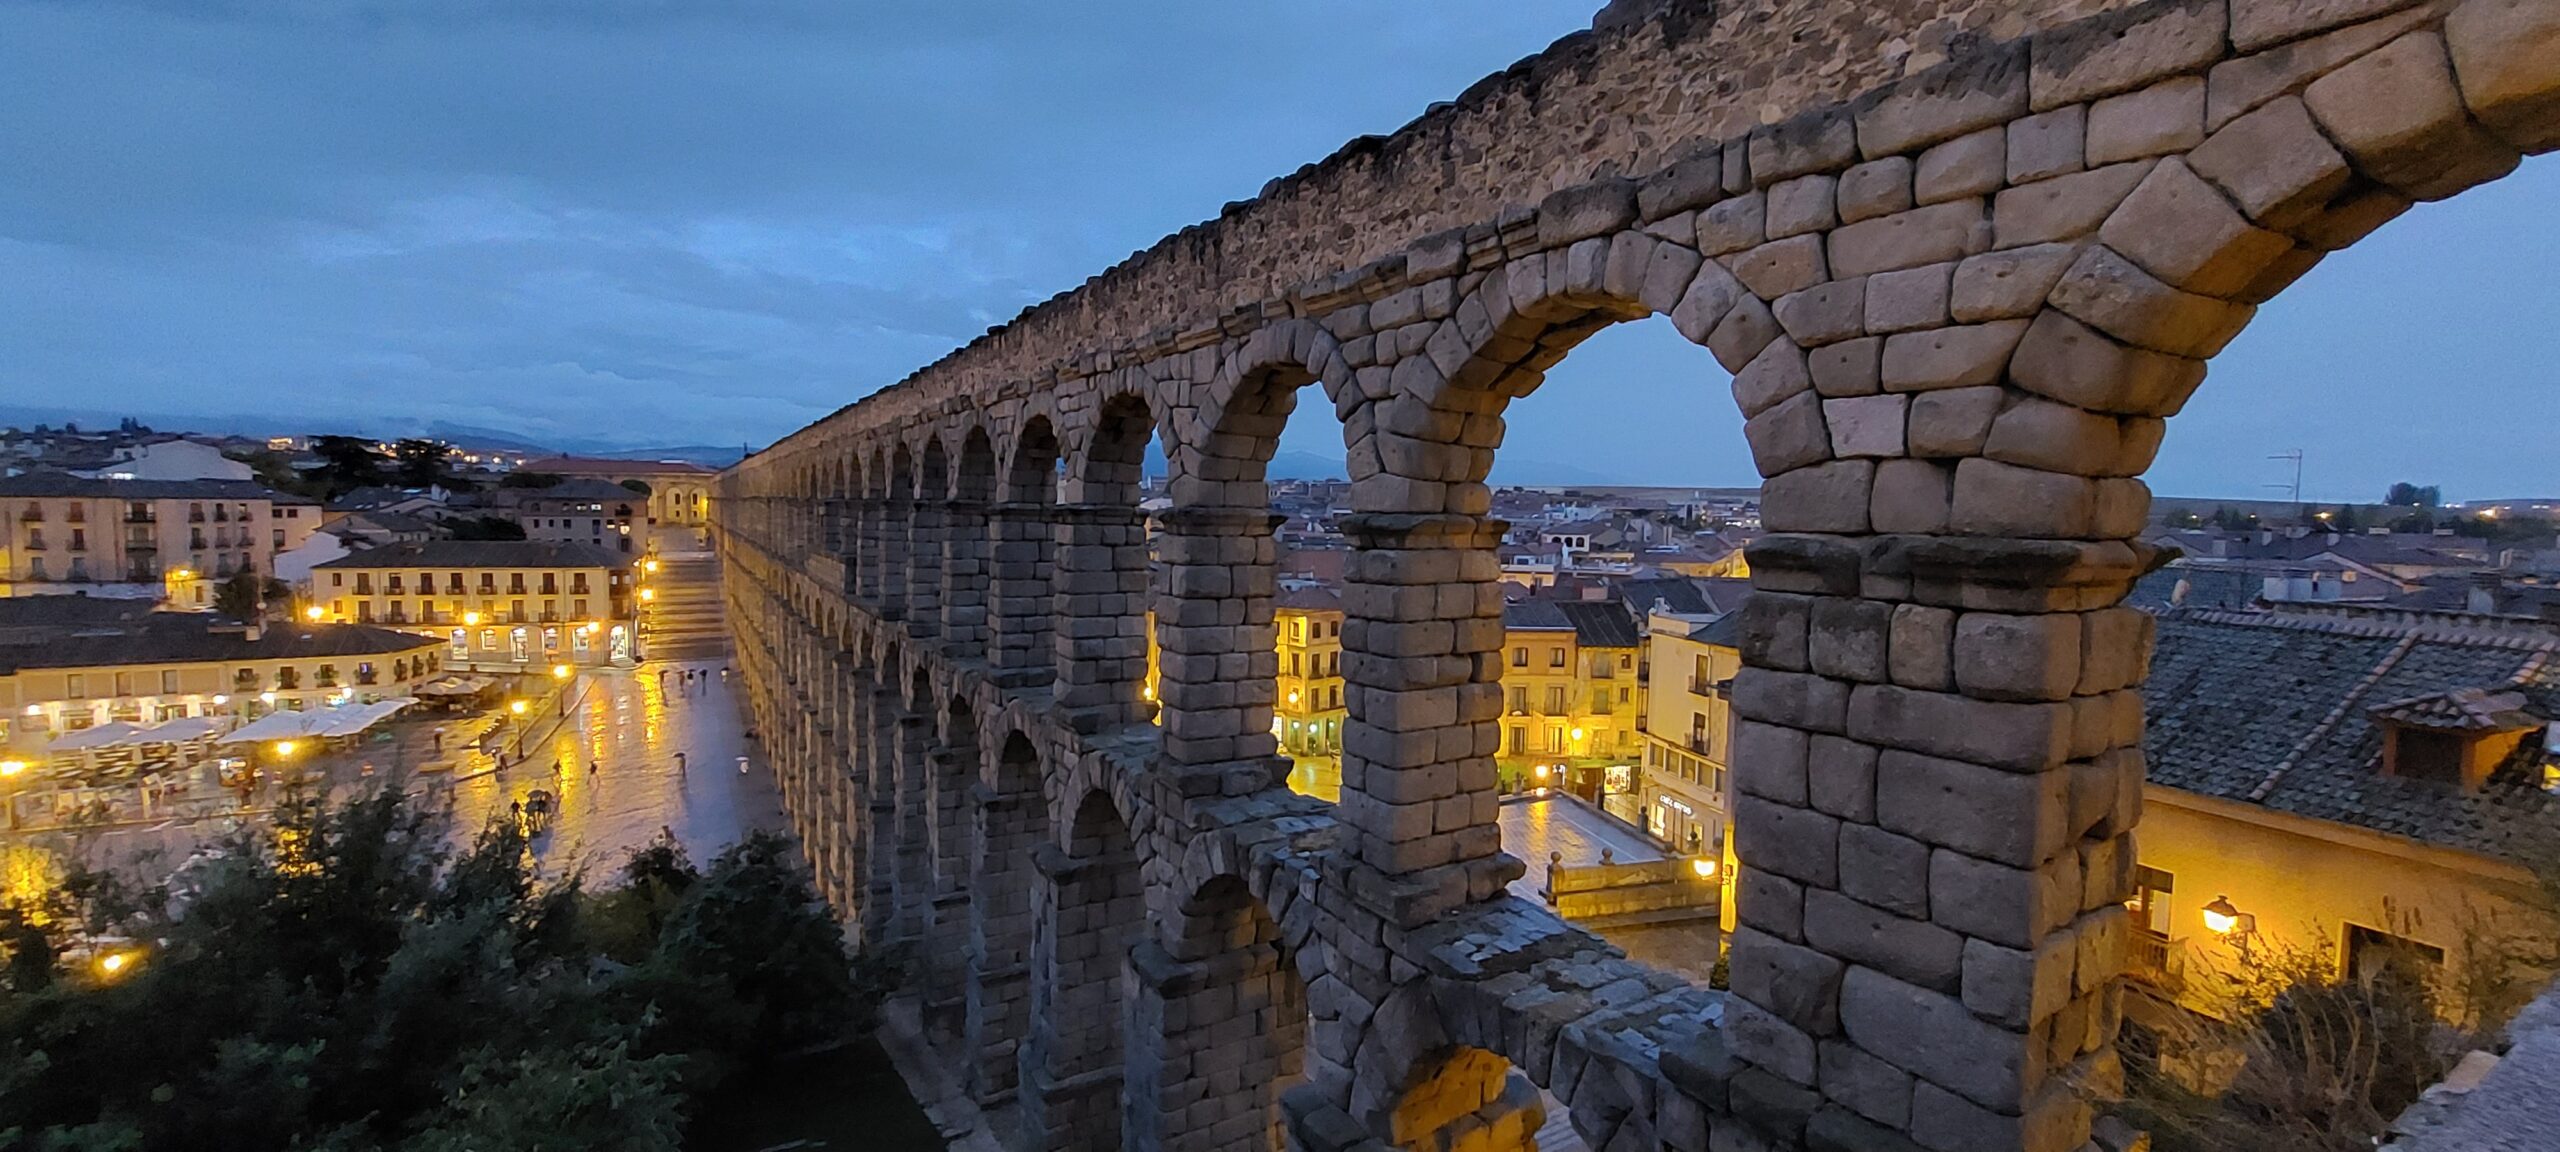 Plan de Gestión de la Ciudad vieja de Segovia y su Acueducto